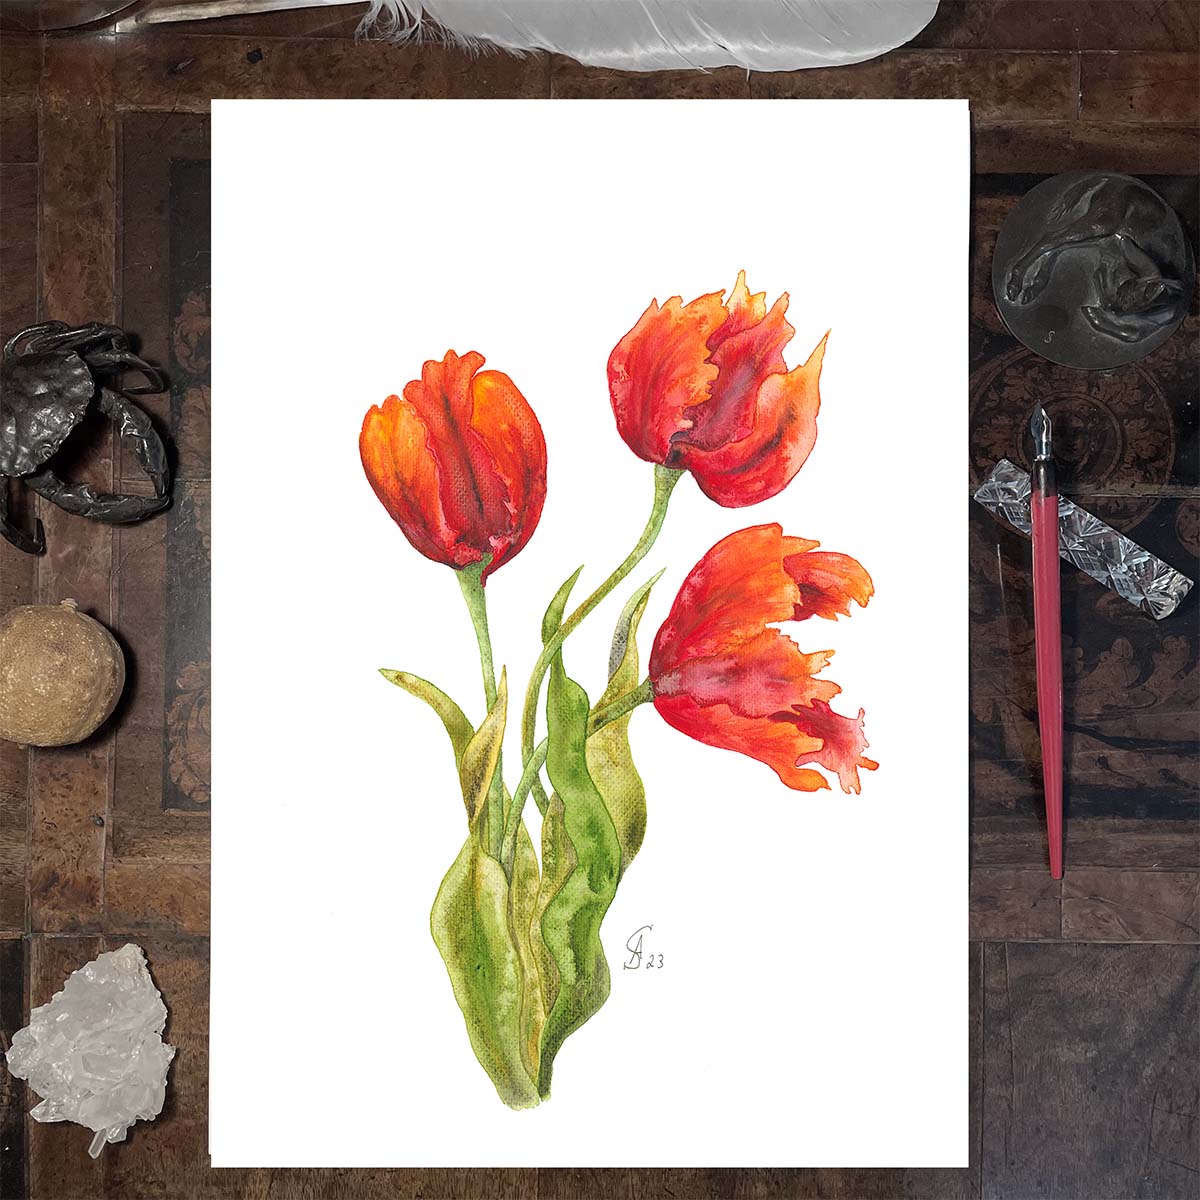 Aquarellbild. Drei orangerote Tulpen in verschiedenen Stadien der Blüte vor weißem Hintergrund. Auf dem Schreibtisch. Kunstdrucke in Museumsqualiät